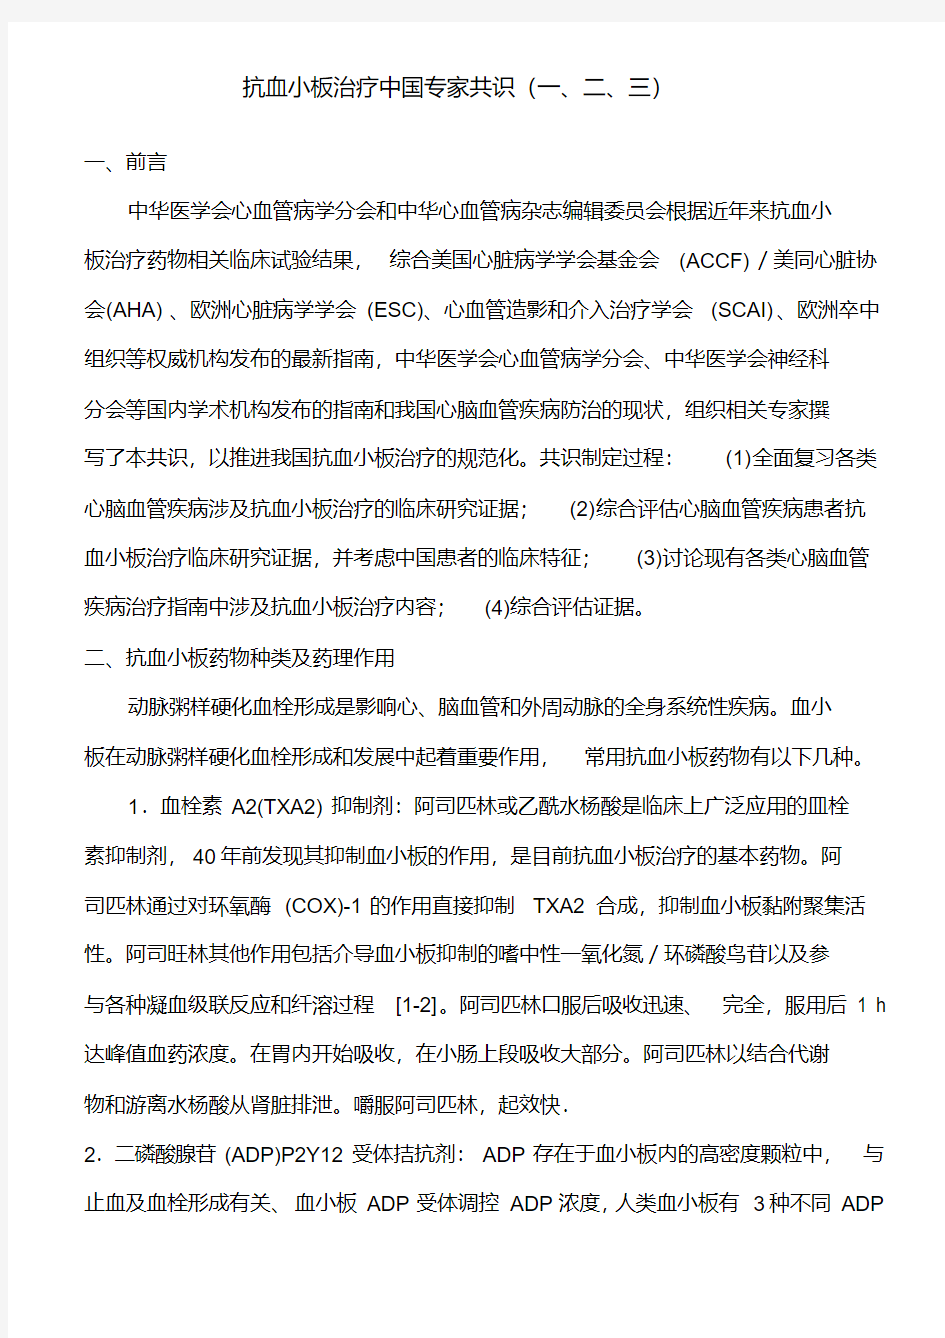 抗血小板治疗中国专家共识(一、二、三).pdf